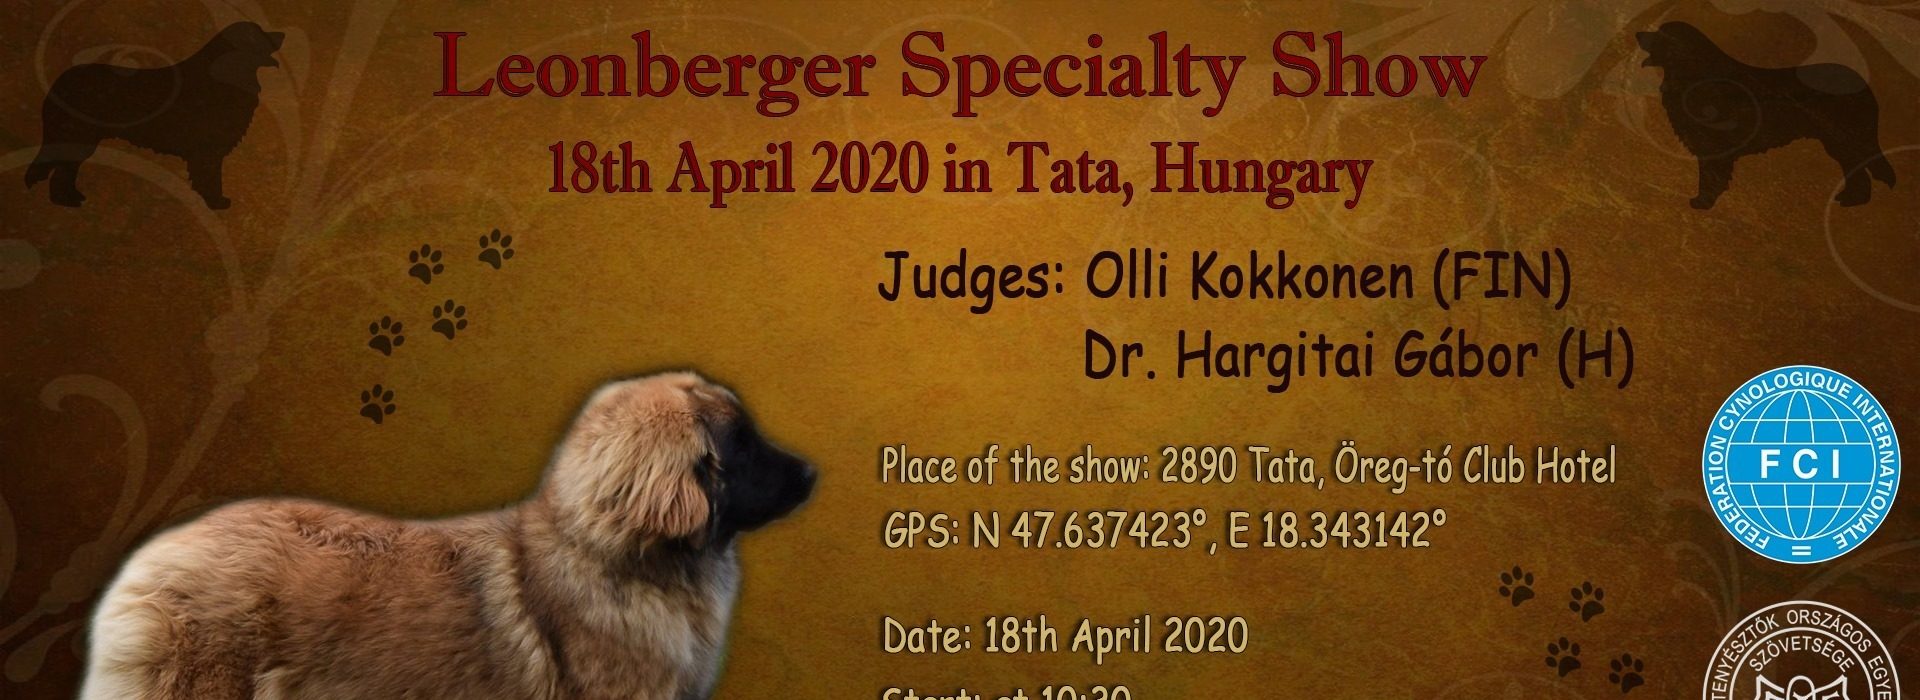 Hungarian Leonberger Specialty Show 2020 -KÖZLEMÉNY